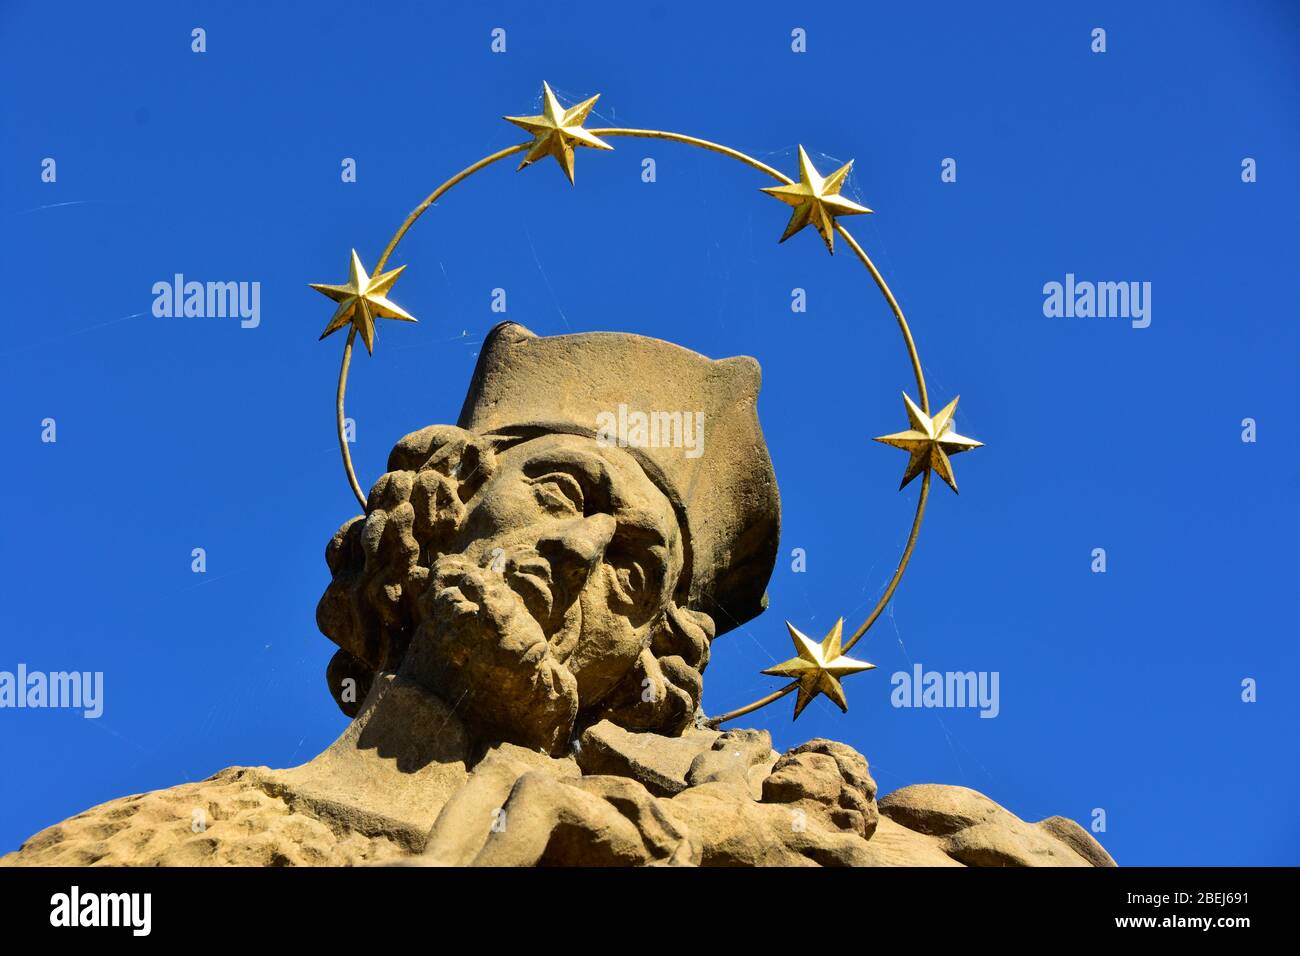 Détail de la statue de Saint Nepomuk en pierre baroque avec une couronne d'étoiles sur le pont en pierre, République tchèque, journée ensoleillée avec ciel bleu Banque D'Images